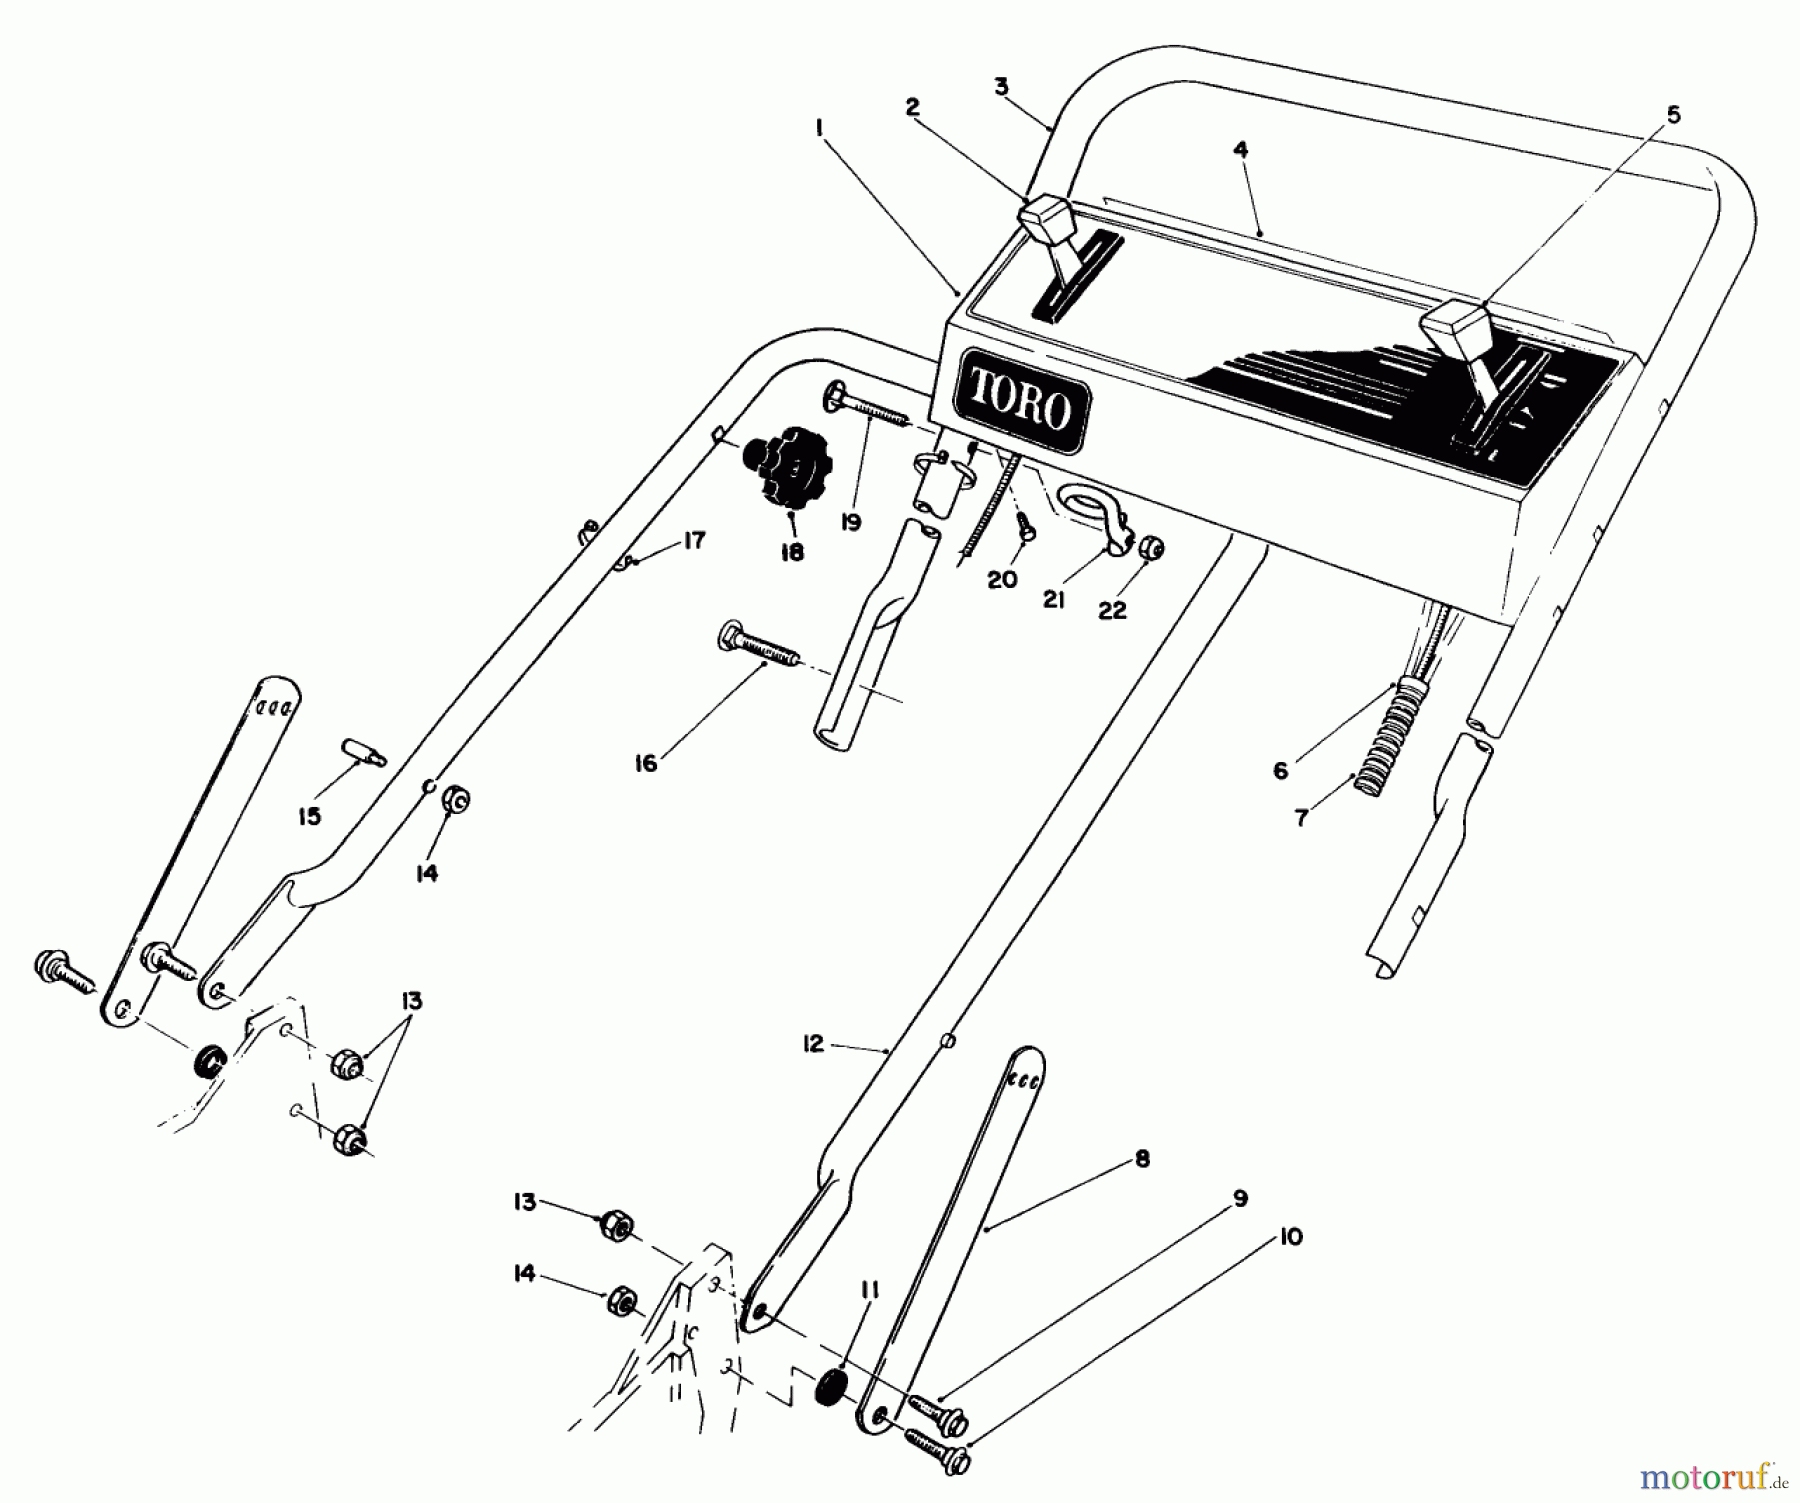  Toro Neu Mowers, Walk-Behind Seite 1 20218 - Toro Lawnmower, 1991 (1000001-1999999) HANDLE ASSEMBLY